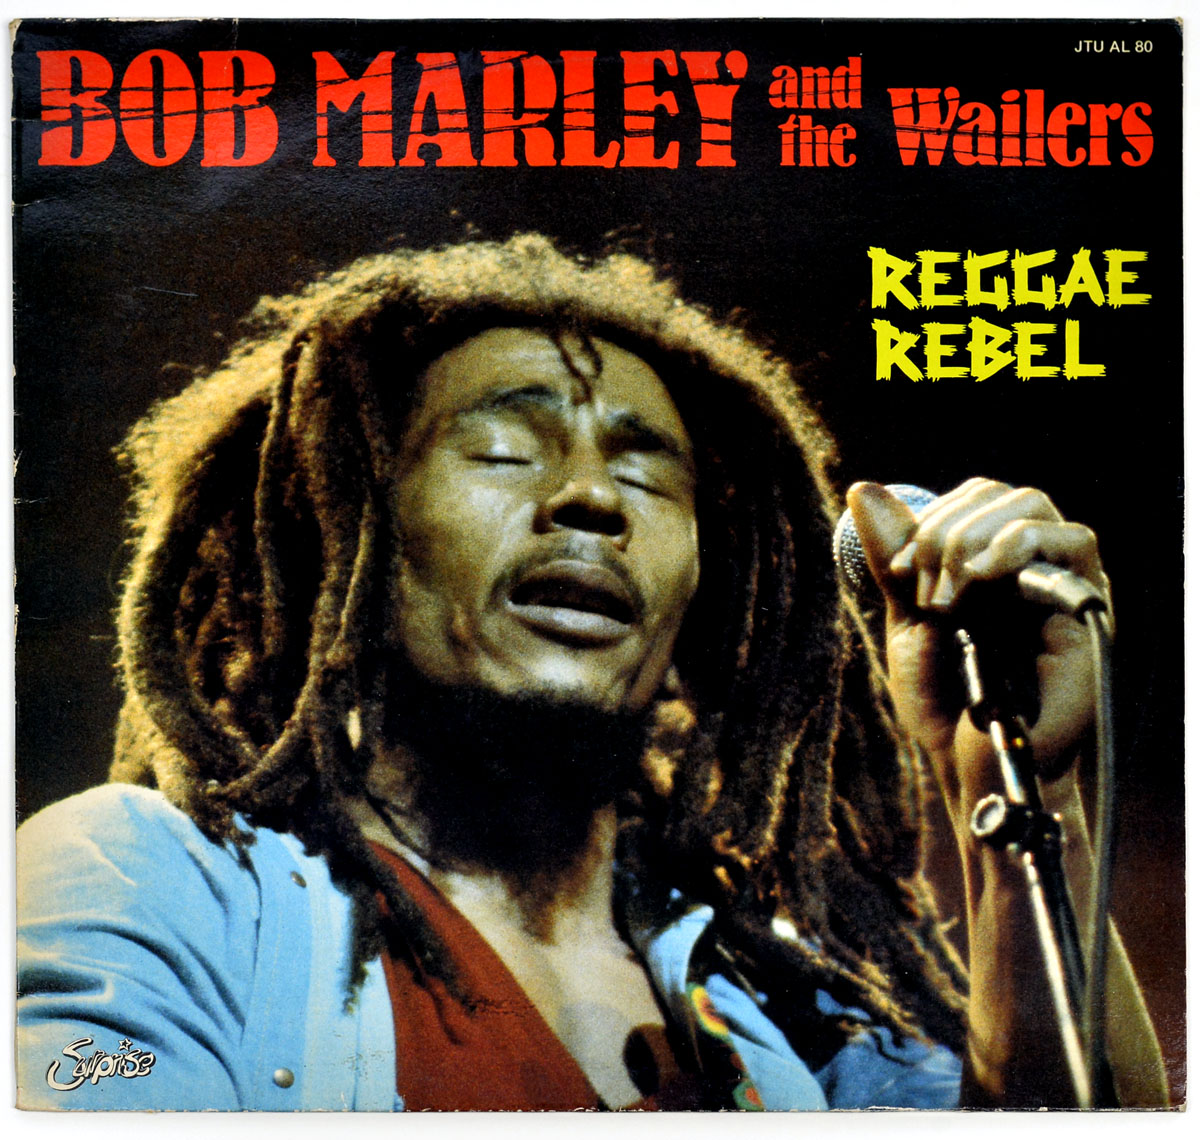 BOB MARLEY & THE WAILERS Reggae Rebel Belgium 12